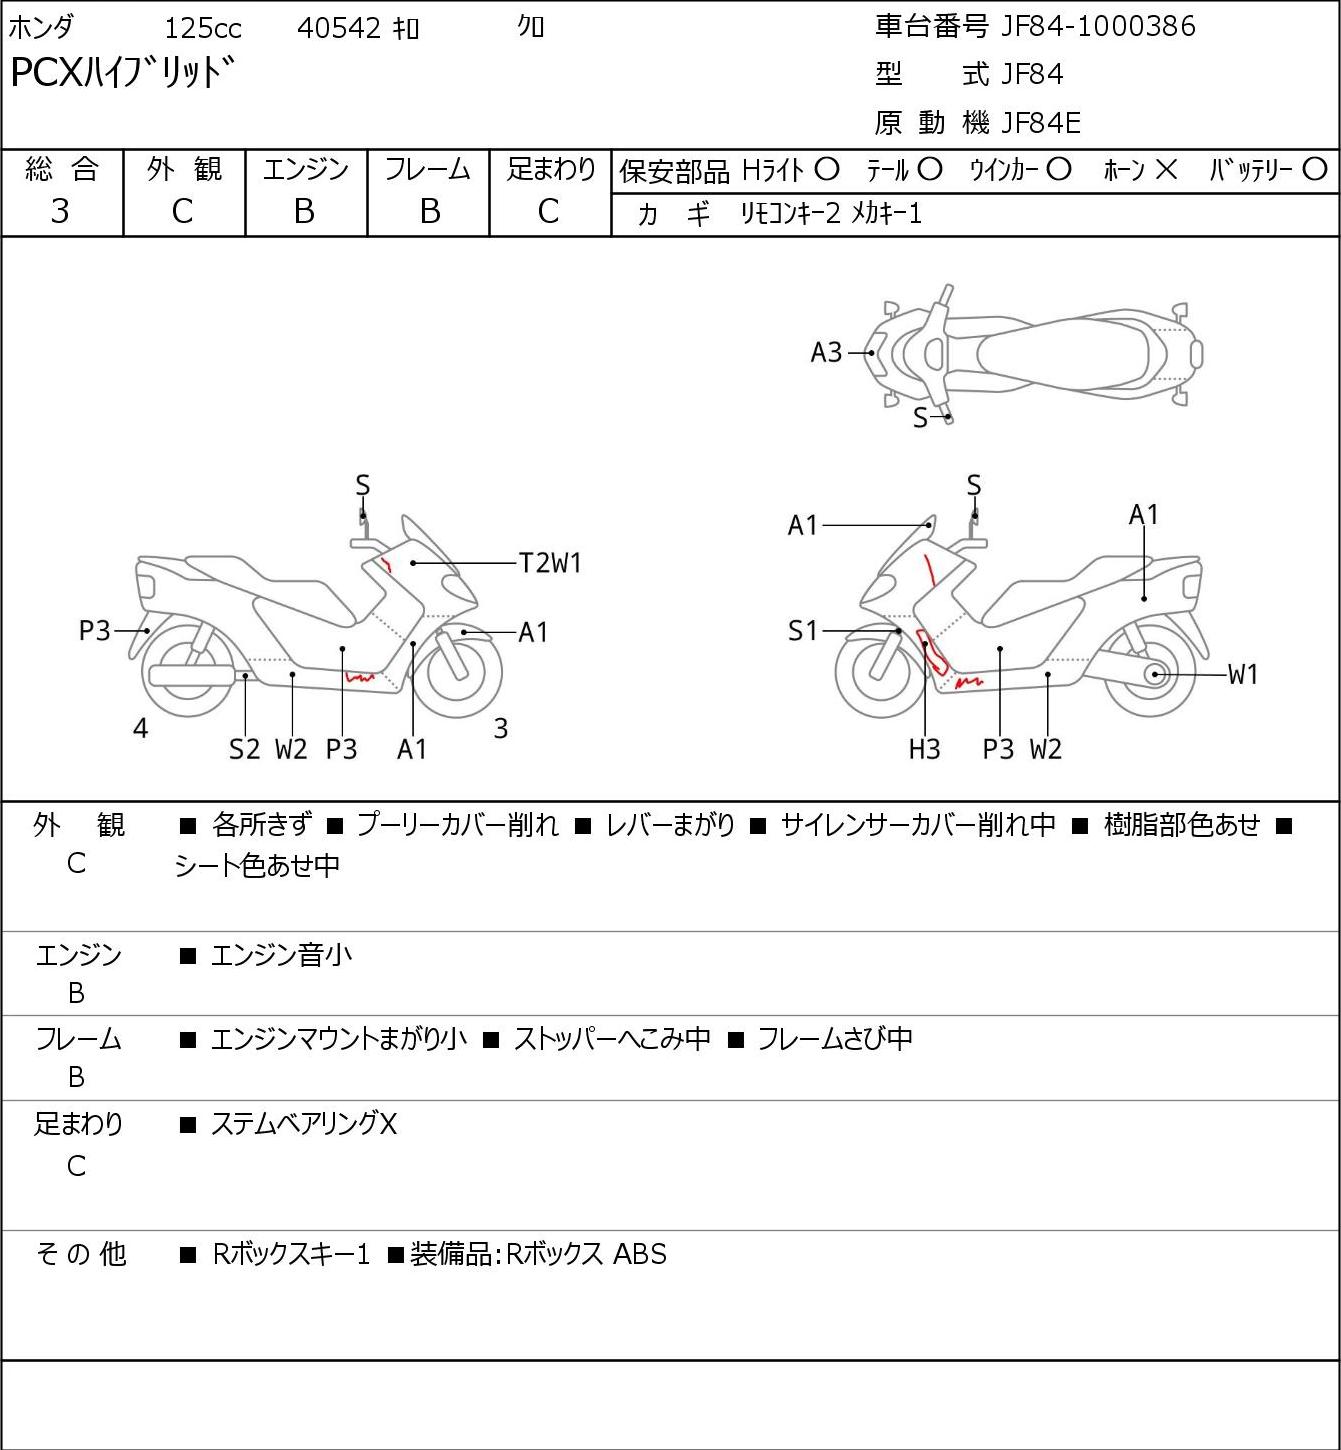 Honda PCX HYBRID JF84 г. 40542